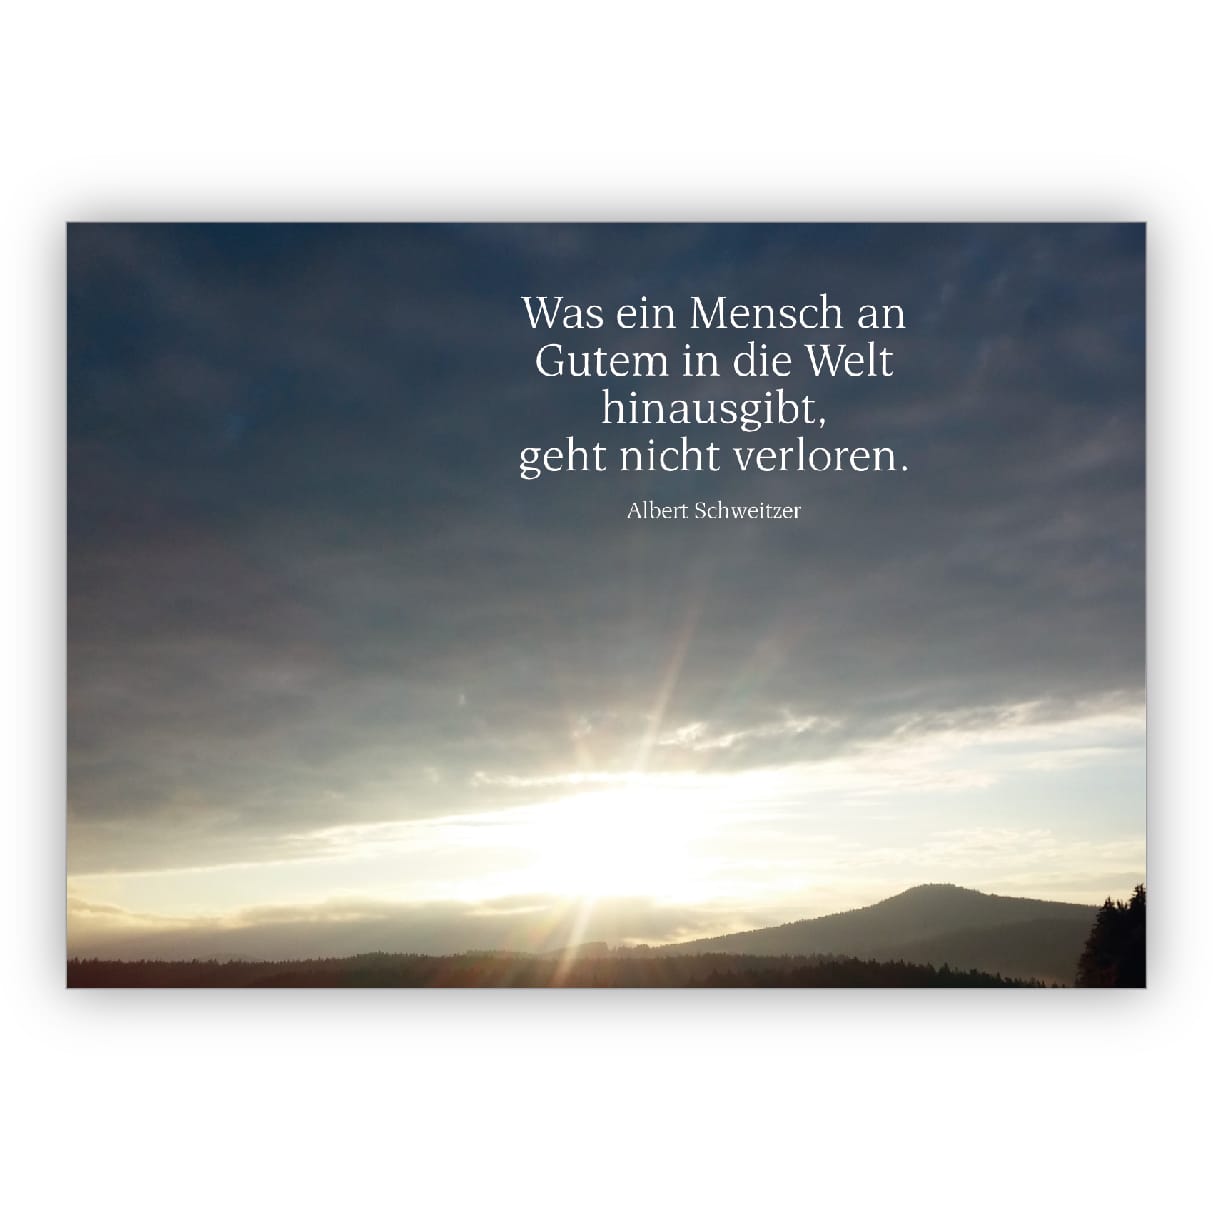 Bewegende Trauerkarte Kondolenzkarte mit strahlendem Sonnenaufgang und Albert Schweizer Zitat